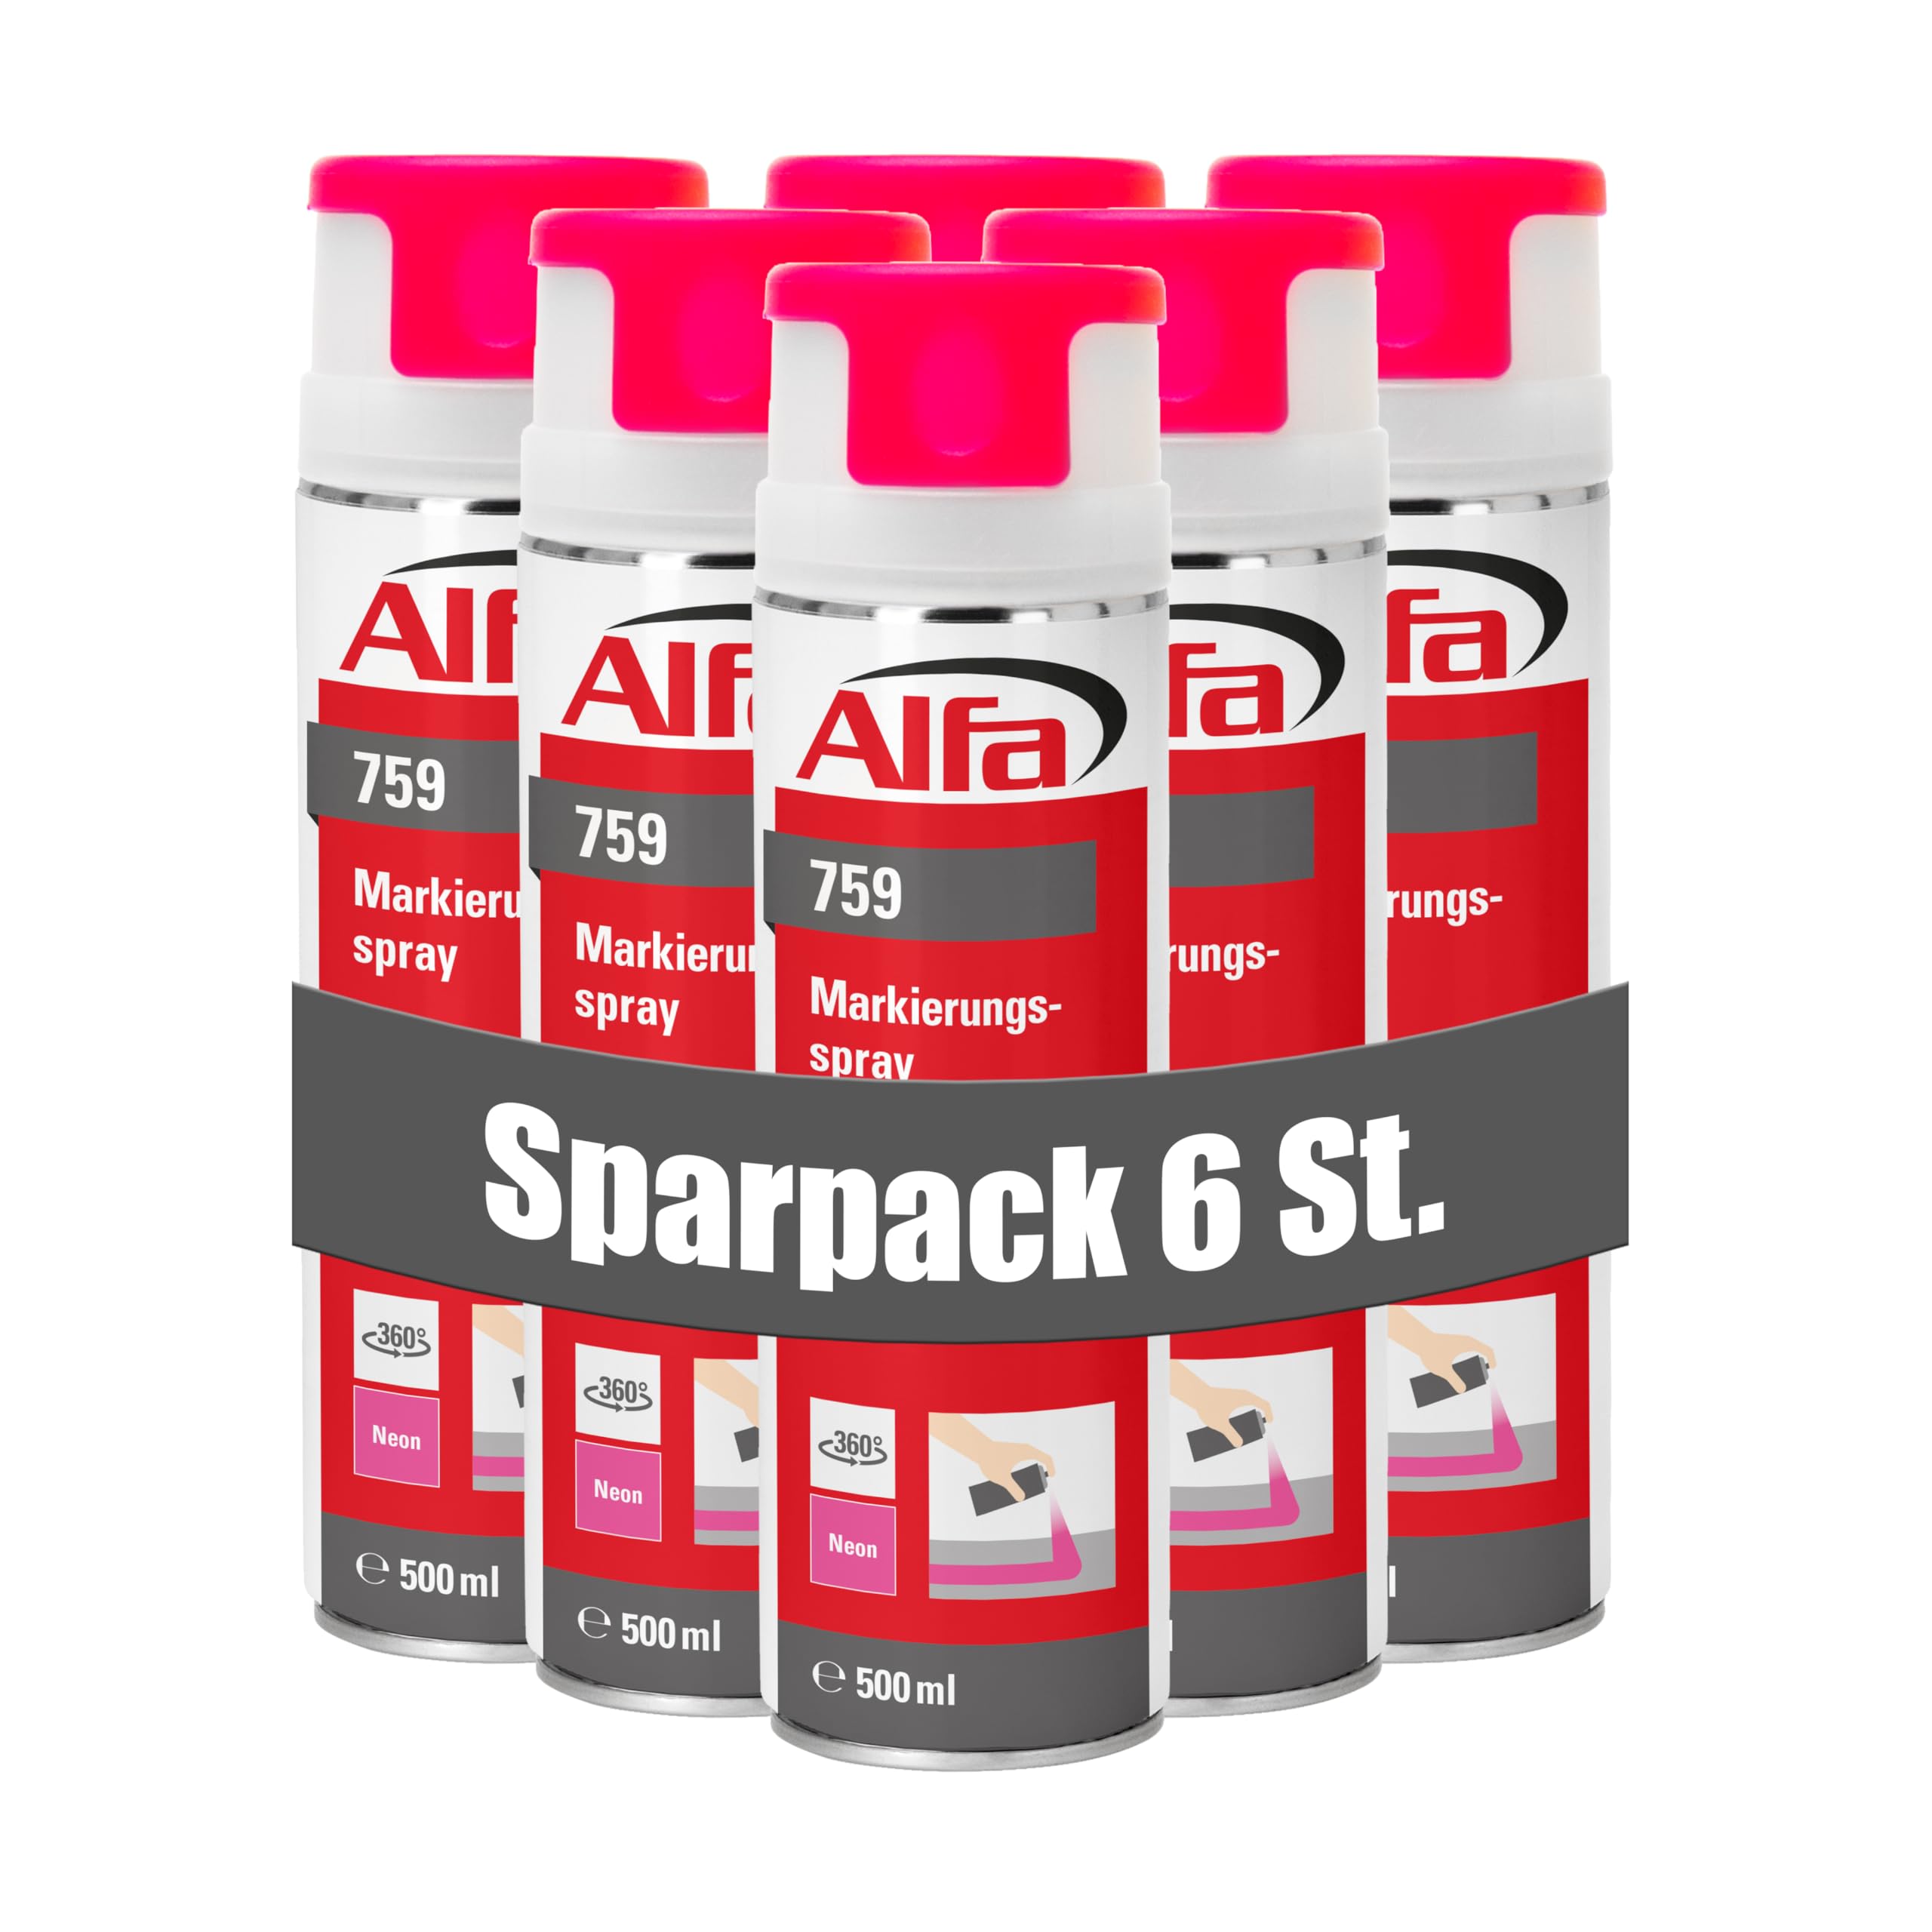 Alfa 6x Markierungsspray neon-pink 500 ml Profi-Qualität für saubere und präzise Markierungen mit flexibler 360° Sprühanwendung (Überkopffunktion)